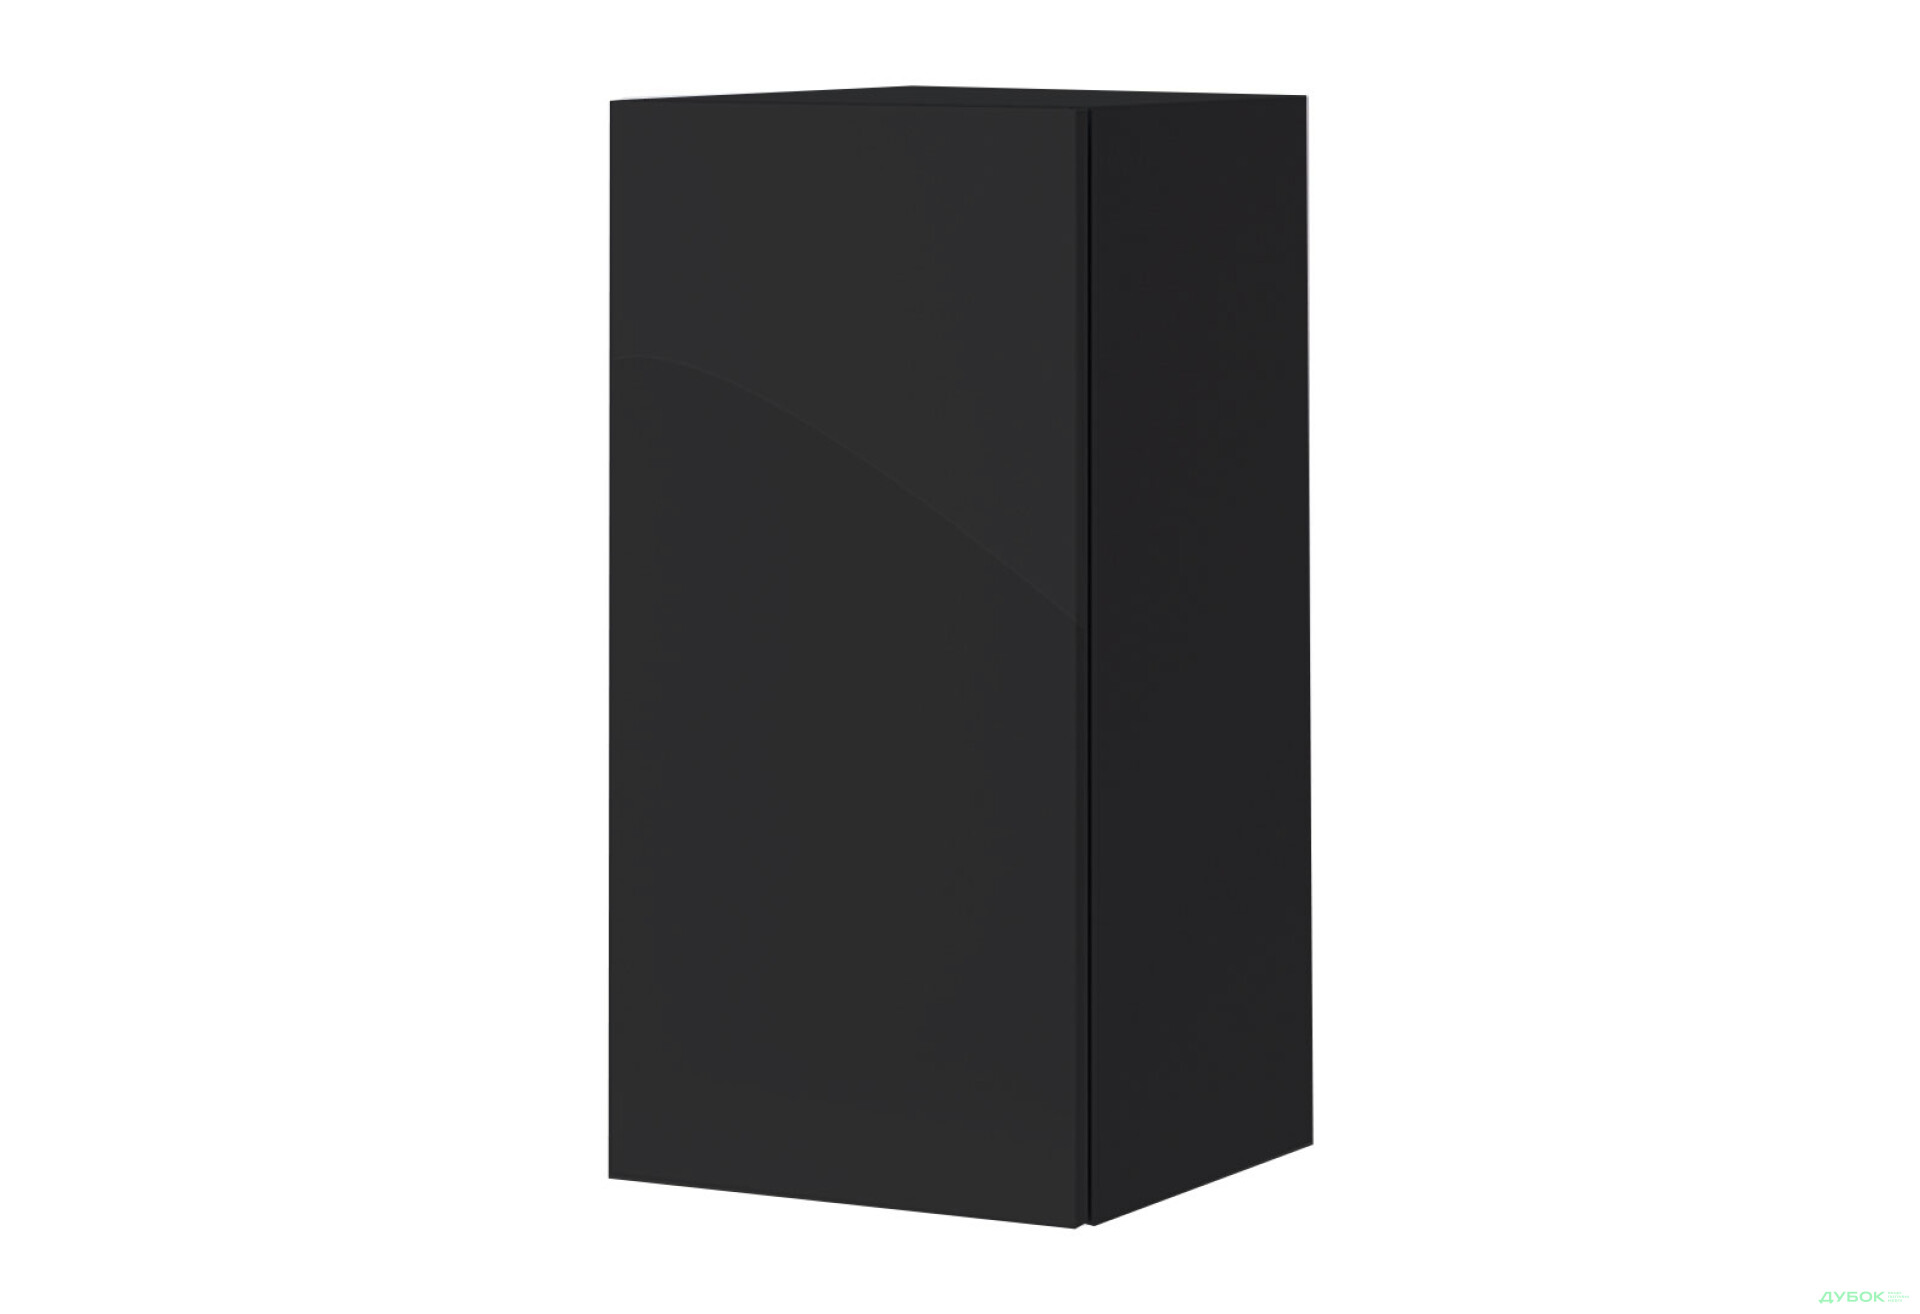 Фото 1 - Шкафчик навесной МироМарк Бокс Секция-21 35 см глянец черный